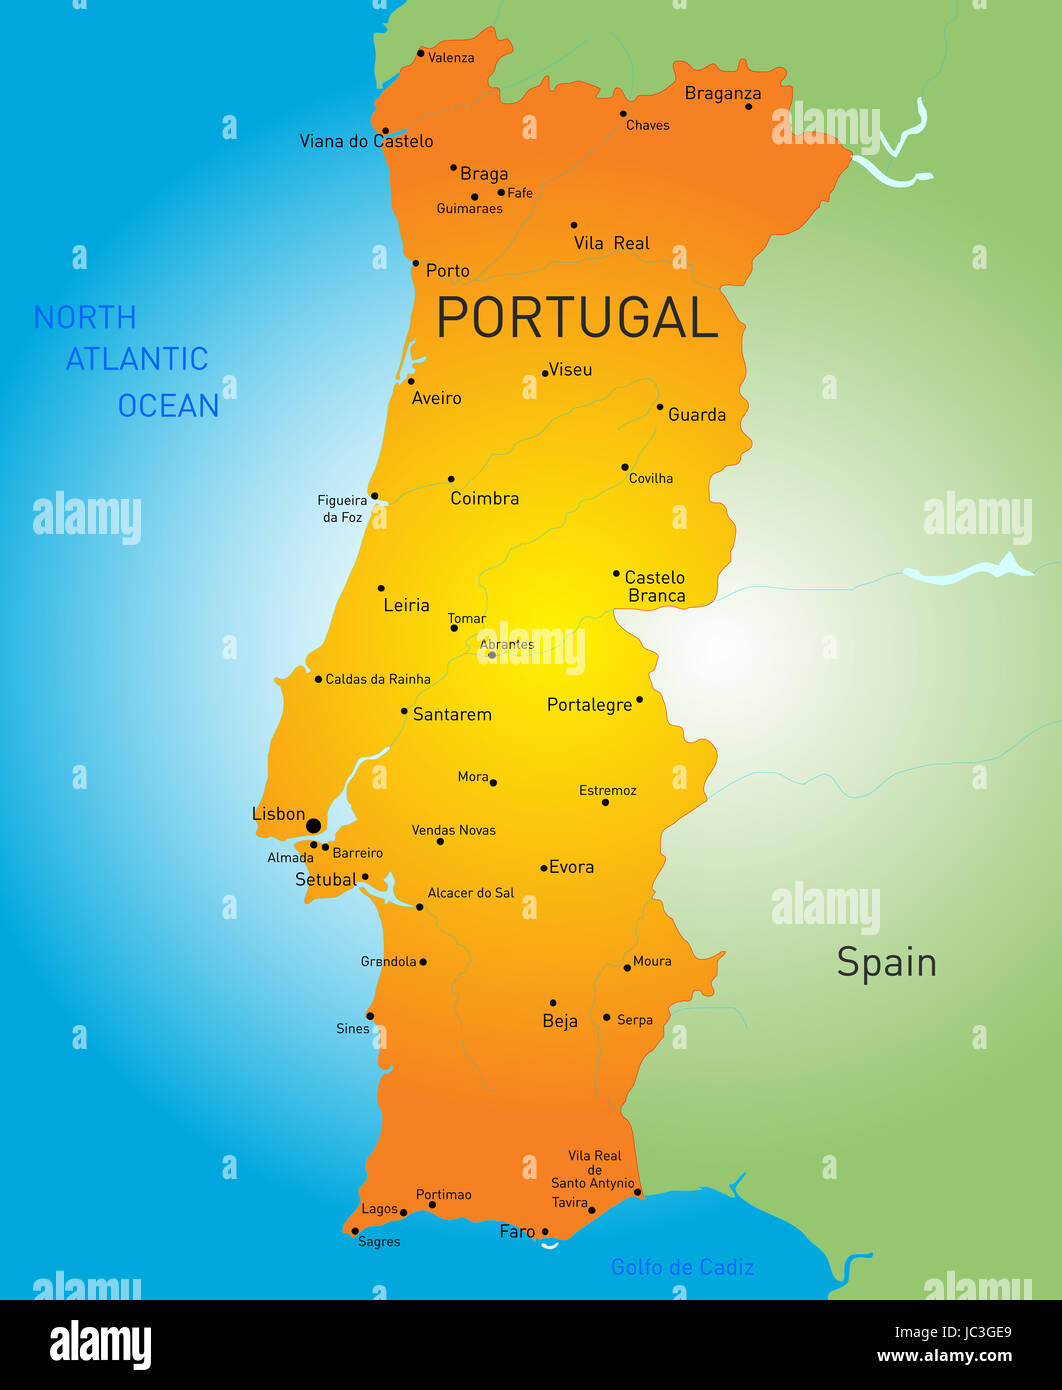 mapa de portugal como um mapa geral no azul - Fotos de arquivo #10635205